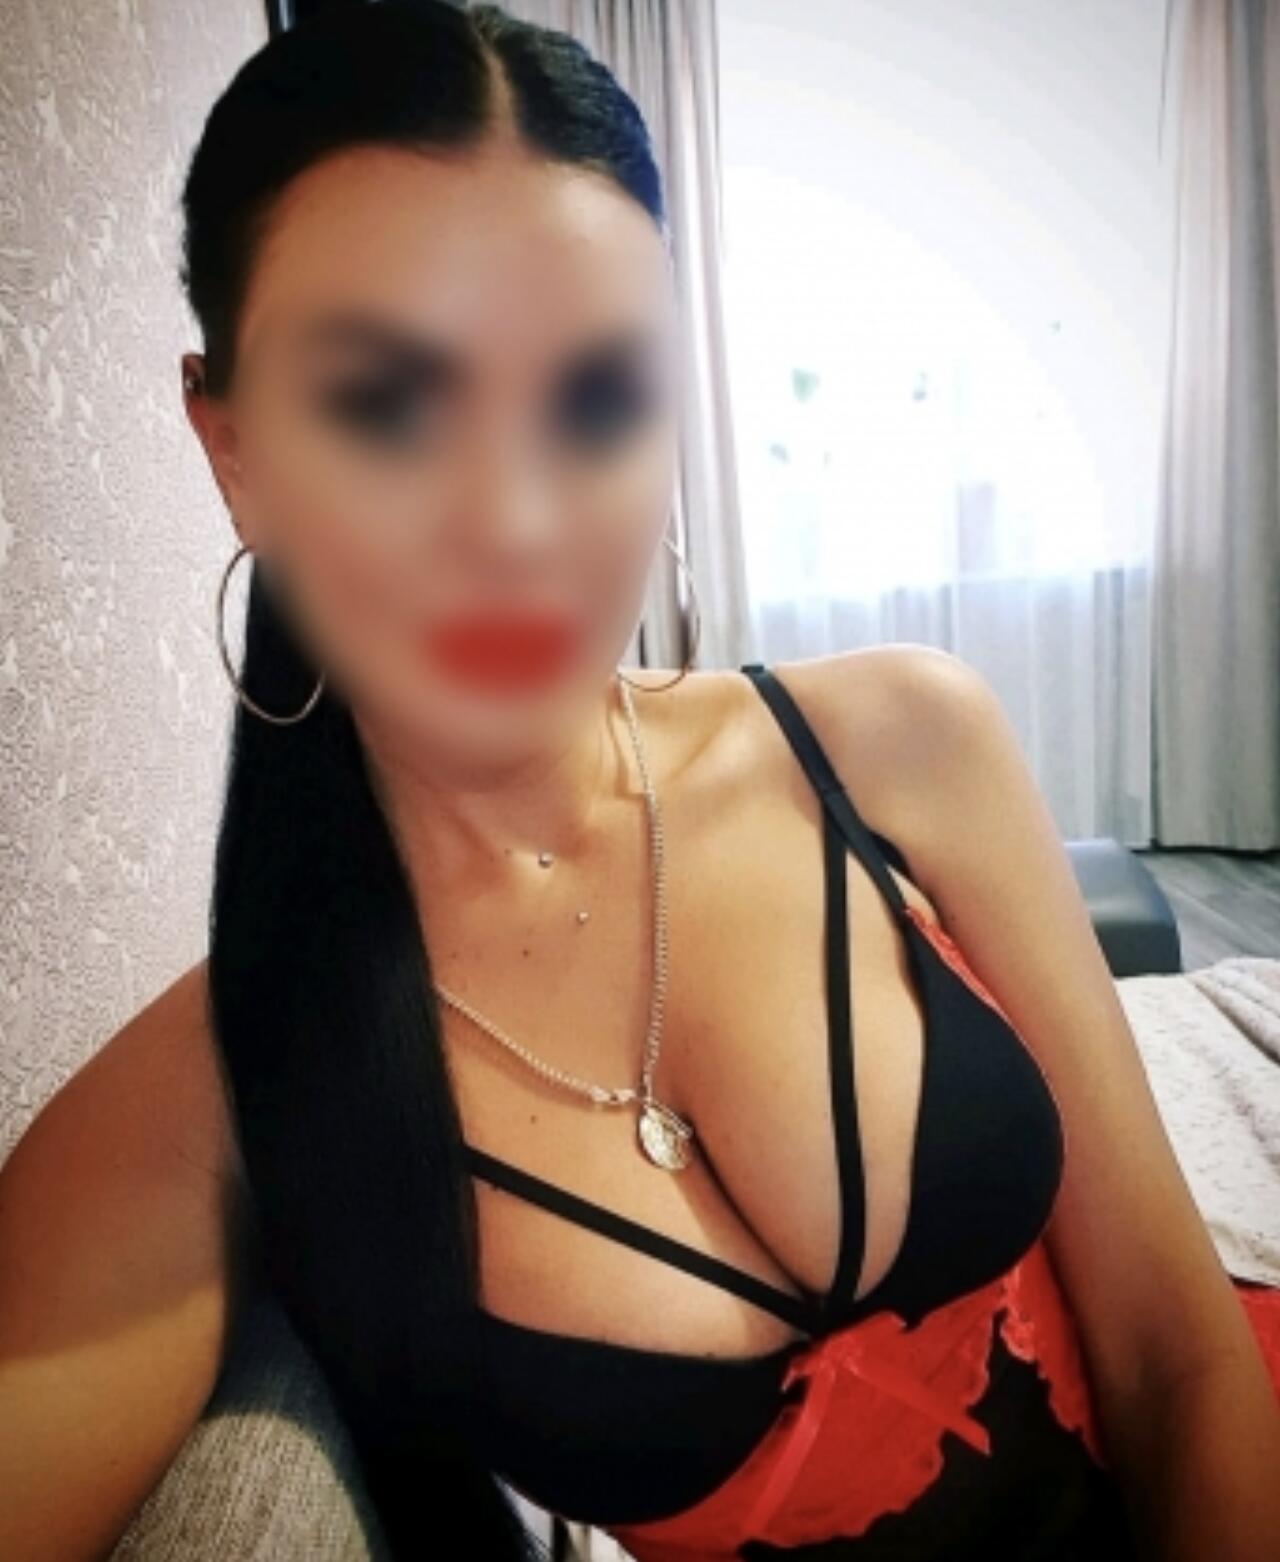 Проститутка Алина, фото 1, тел: 0930138237. В центре города - Киев